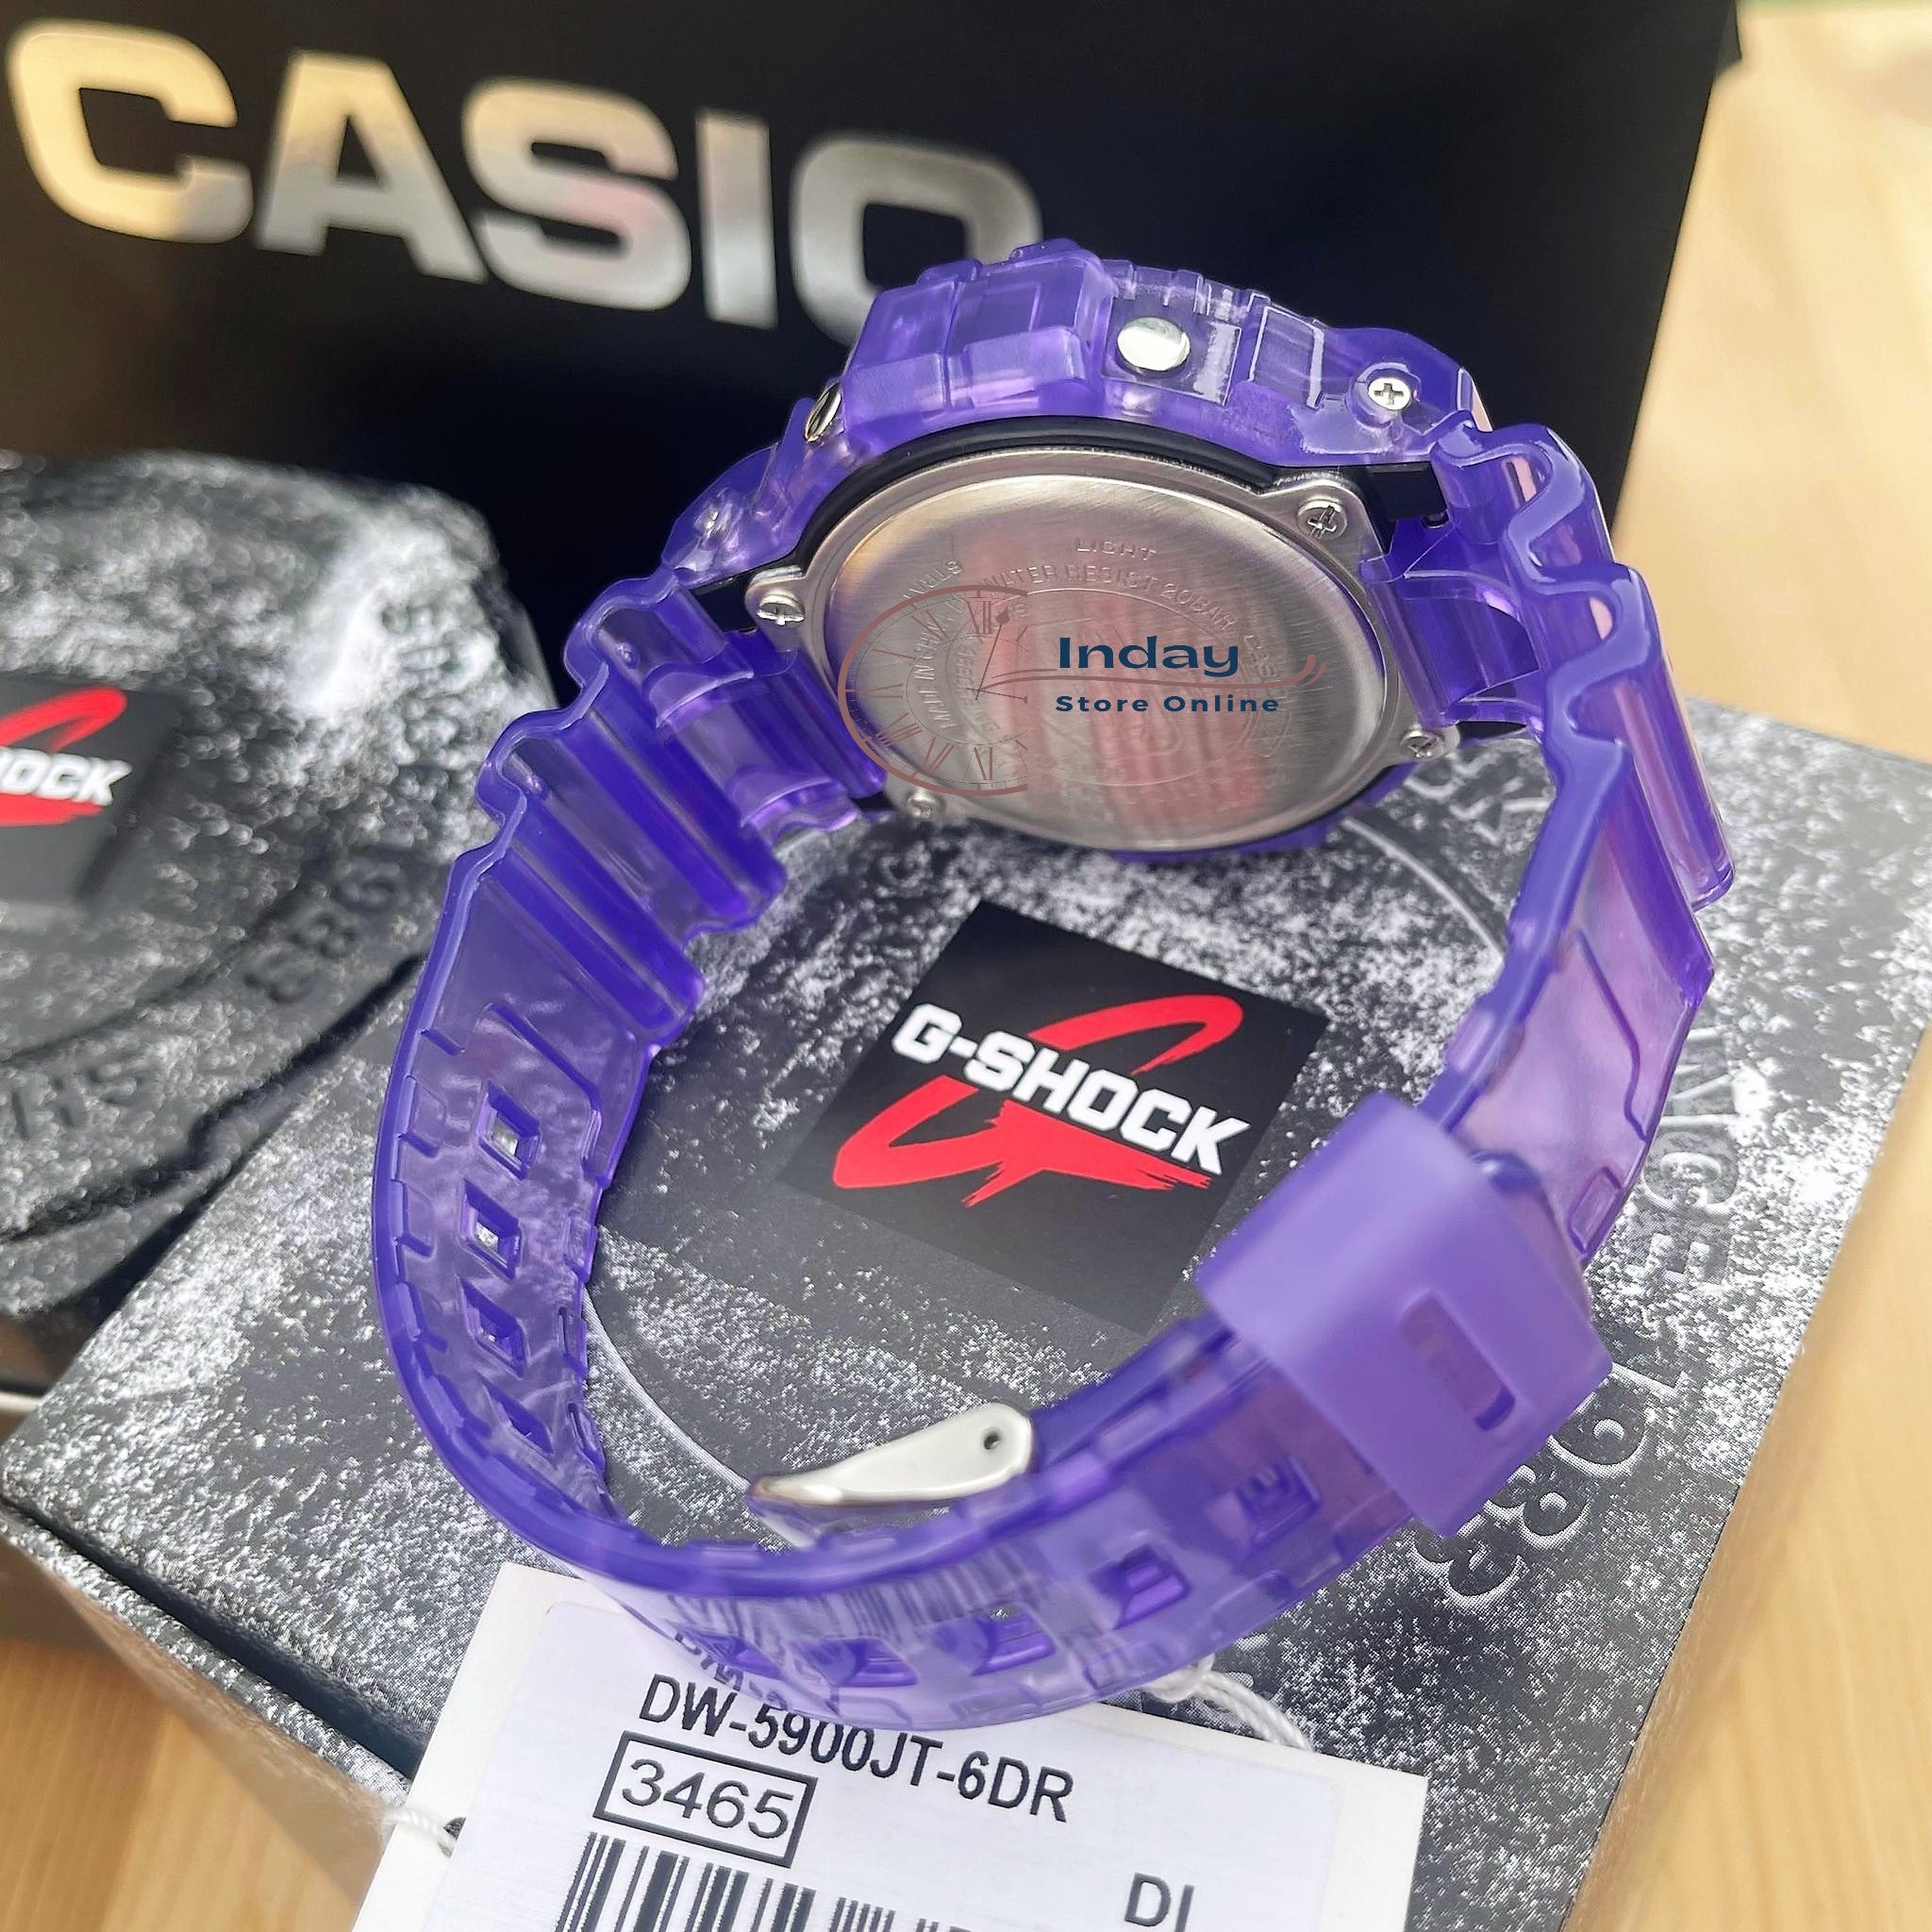 Casio G-Shock Men's Watch DW-5900JT-6 Digital 5900 Series Retro 